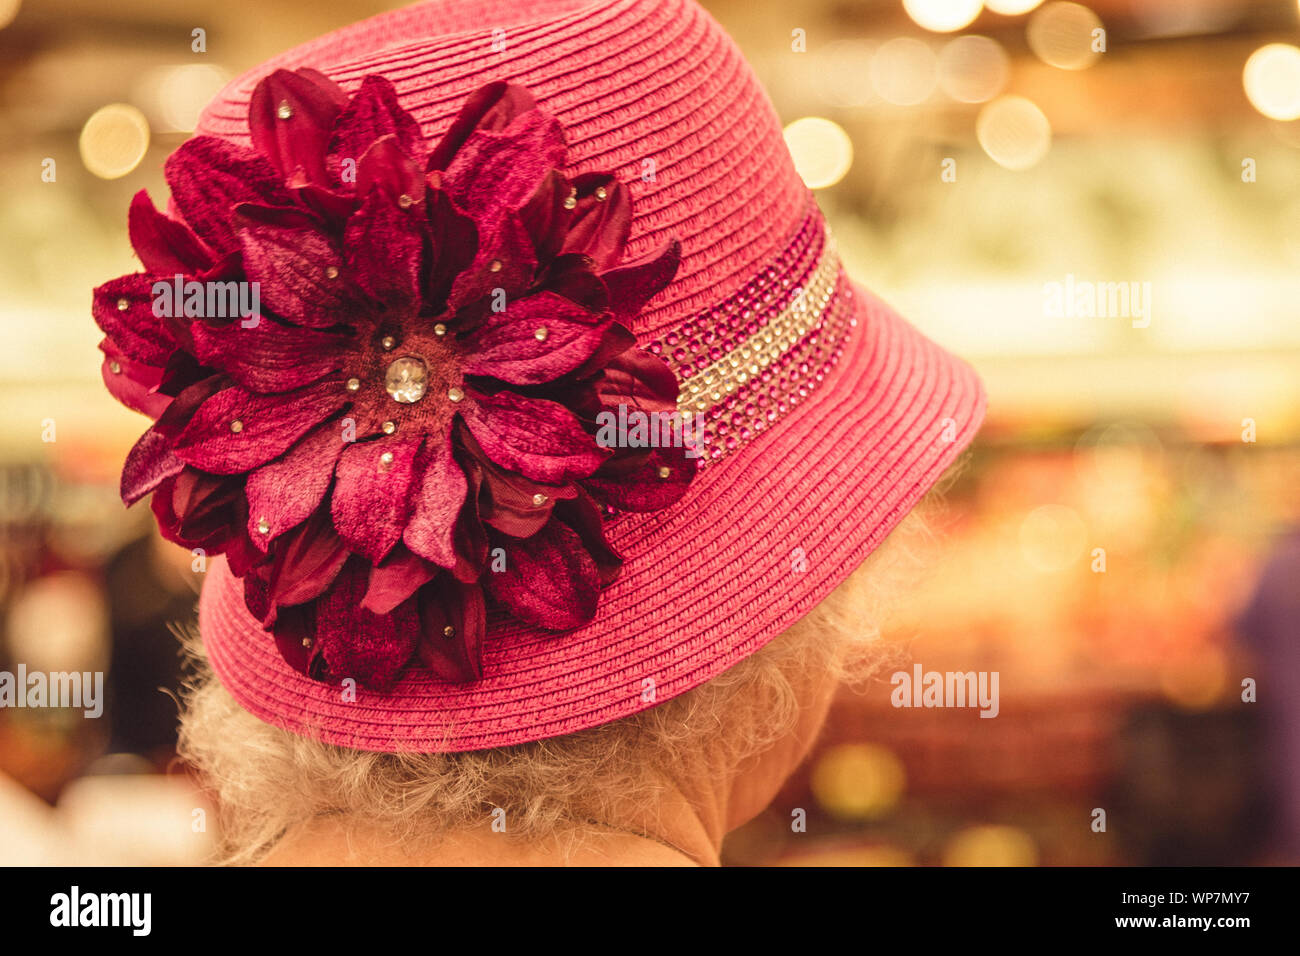 Fotografia analogica della parte posteriore di una vecchia signora rosa hat. Sun City, Arizona. Foto Stock